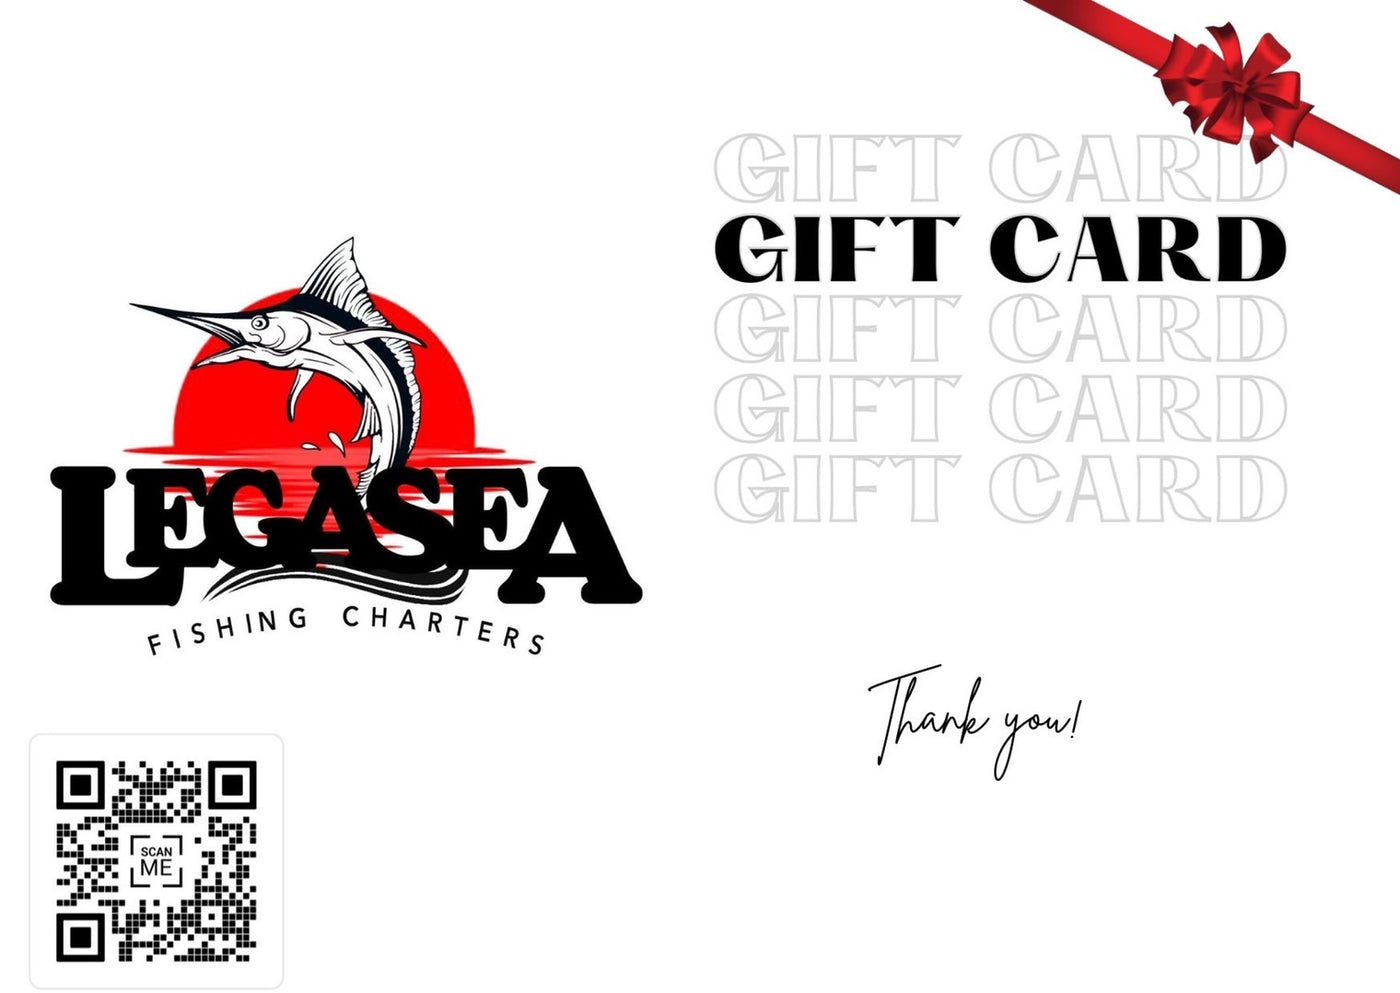 LegaSea Gift Cards